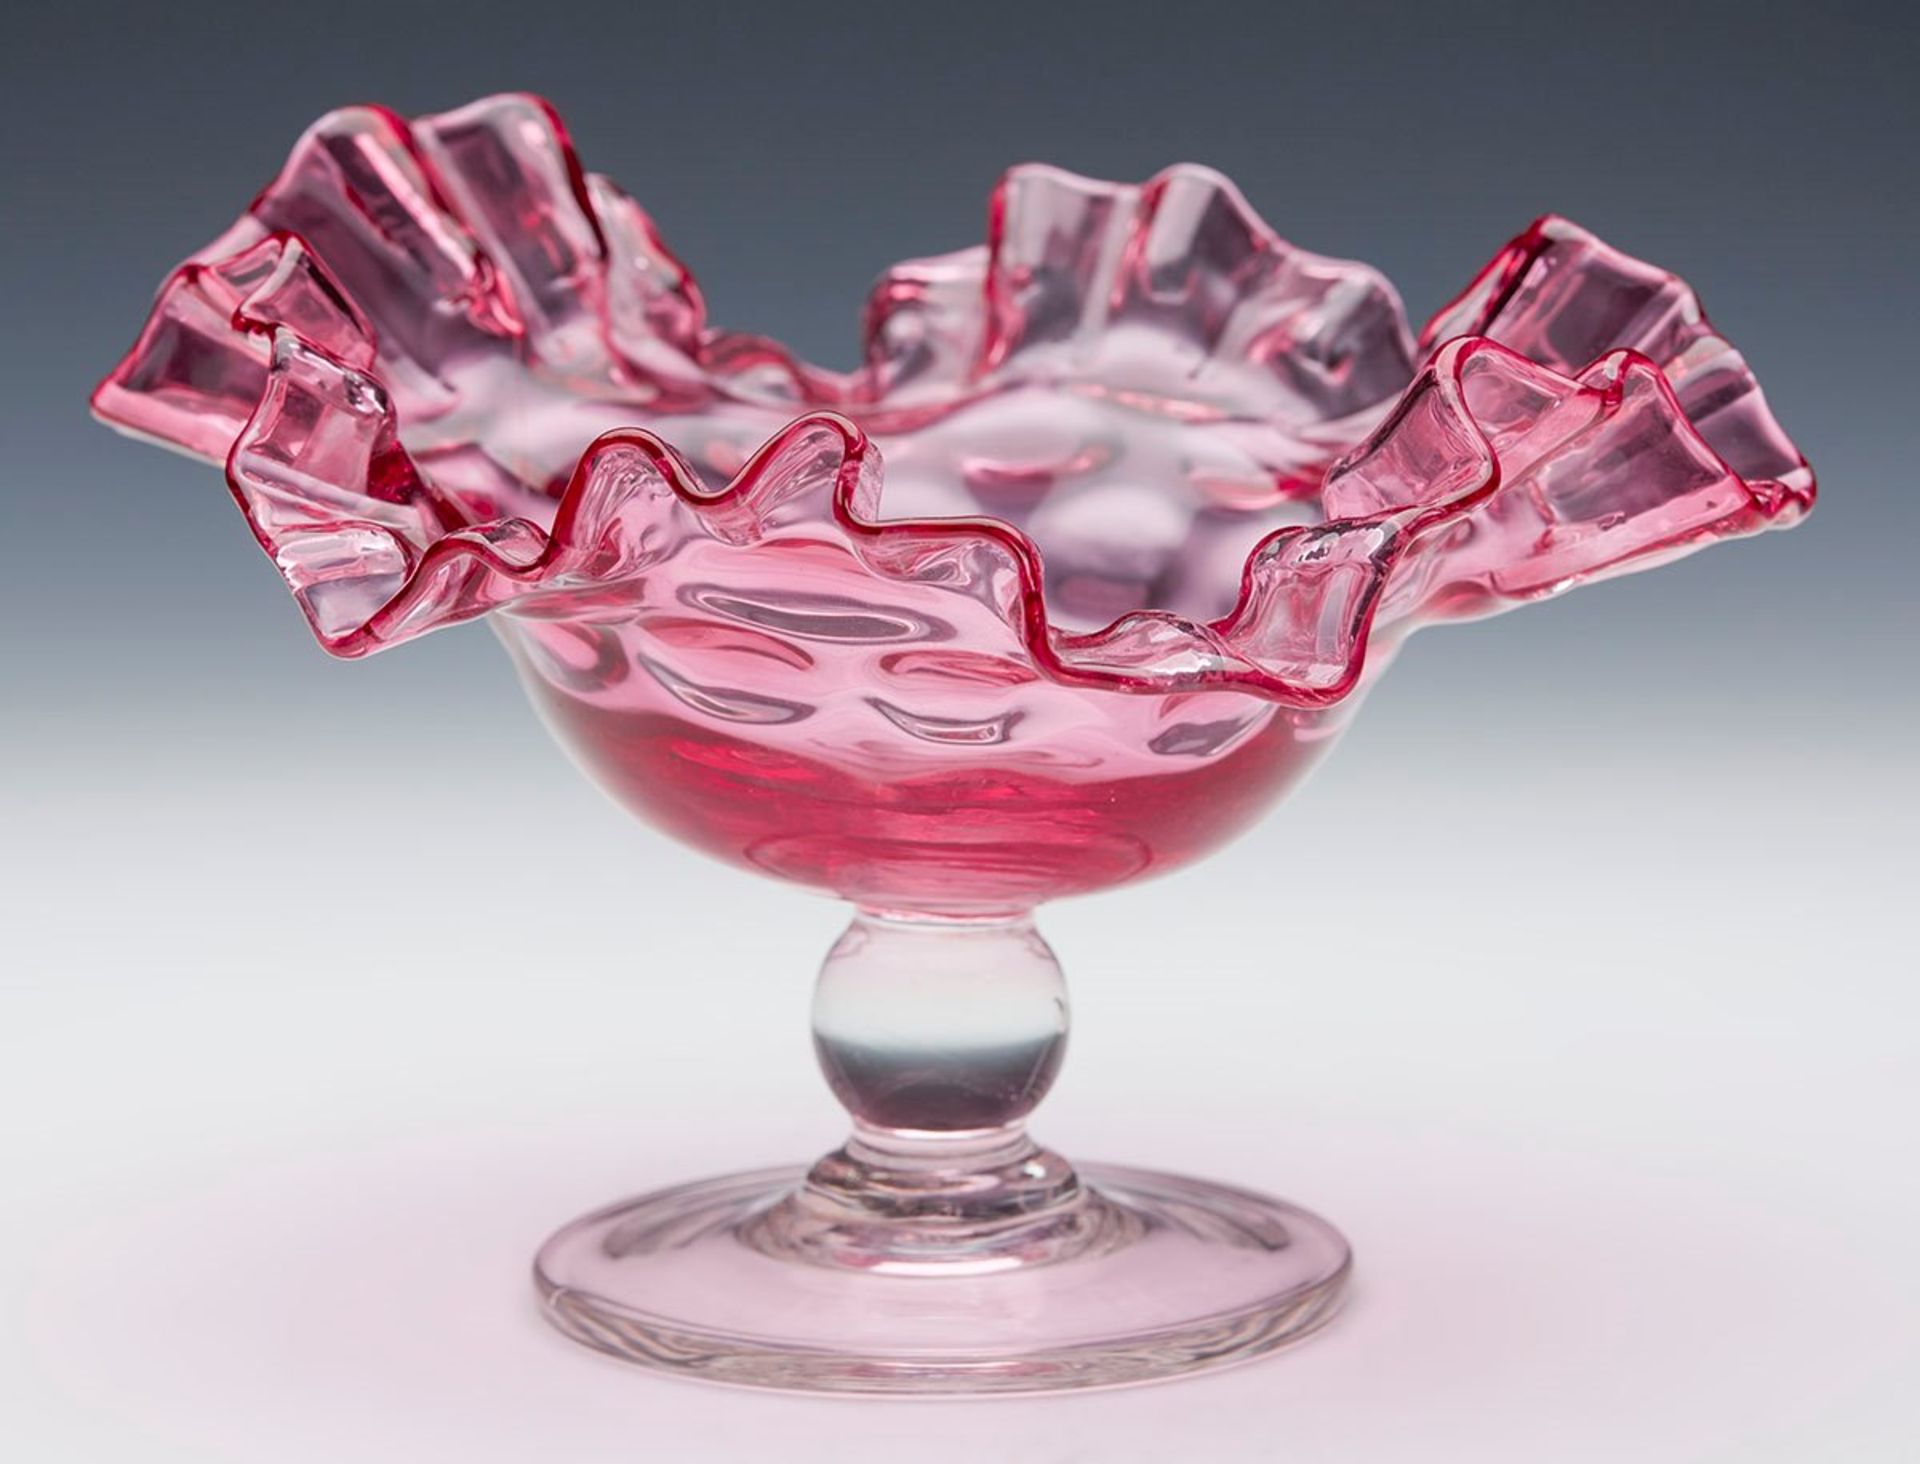 ANTIQUE/VINTAGE CRANBERRY GLASS PEDESTAL DISH 19/20TH C.